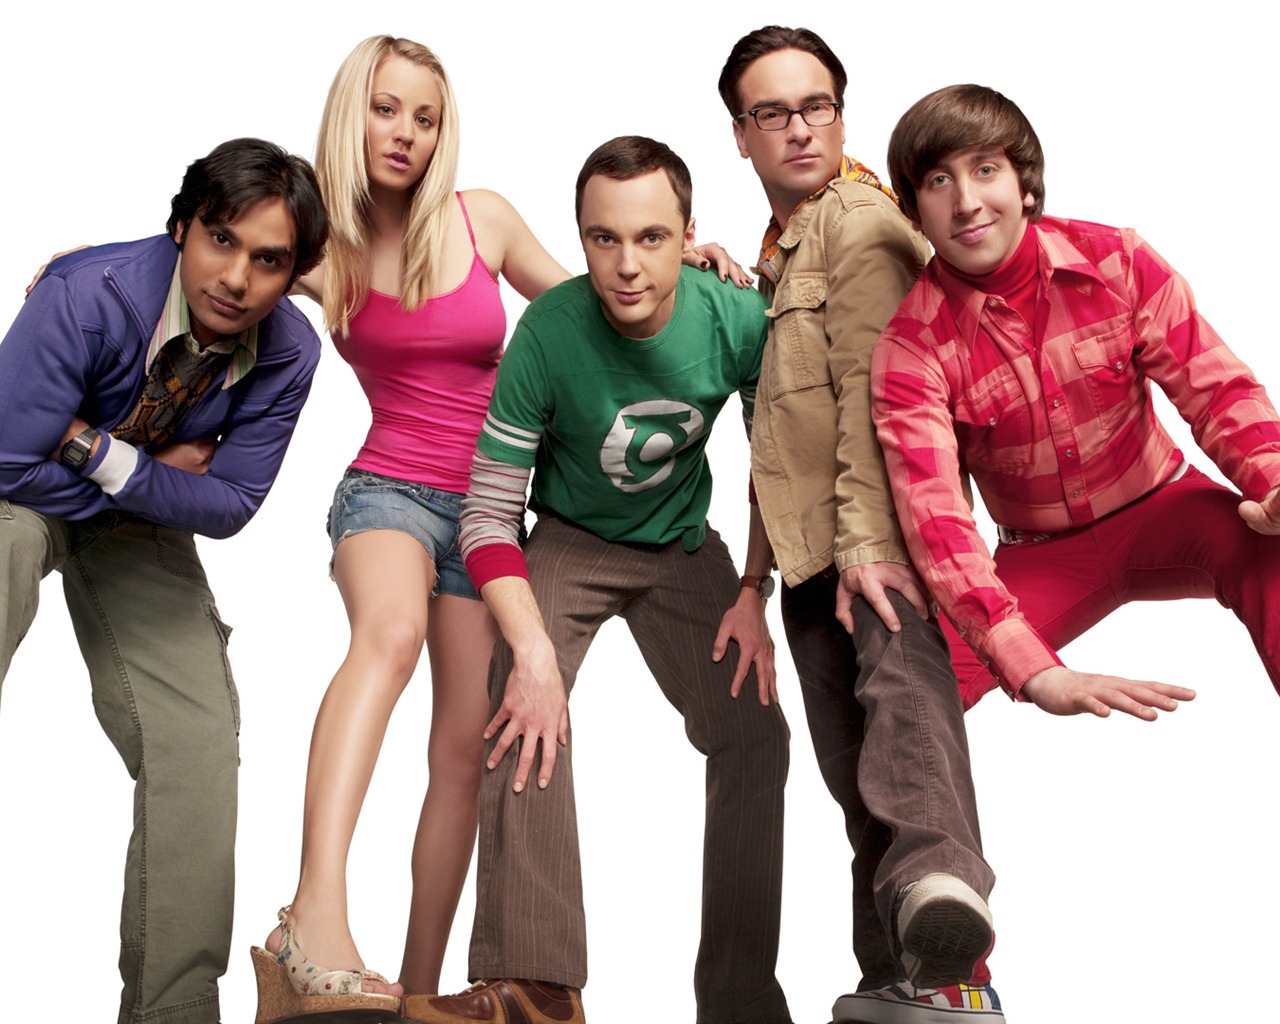 The Big Bang Theory 生活大爆炸 电视剧高清壁纸25 - 1280x1024